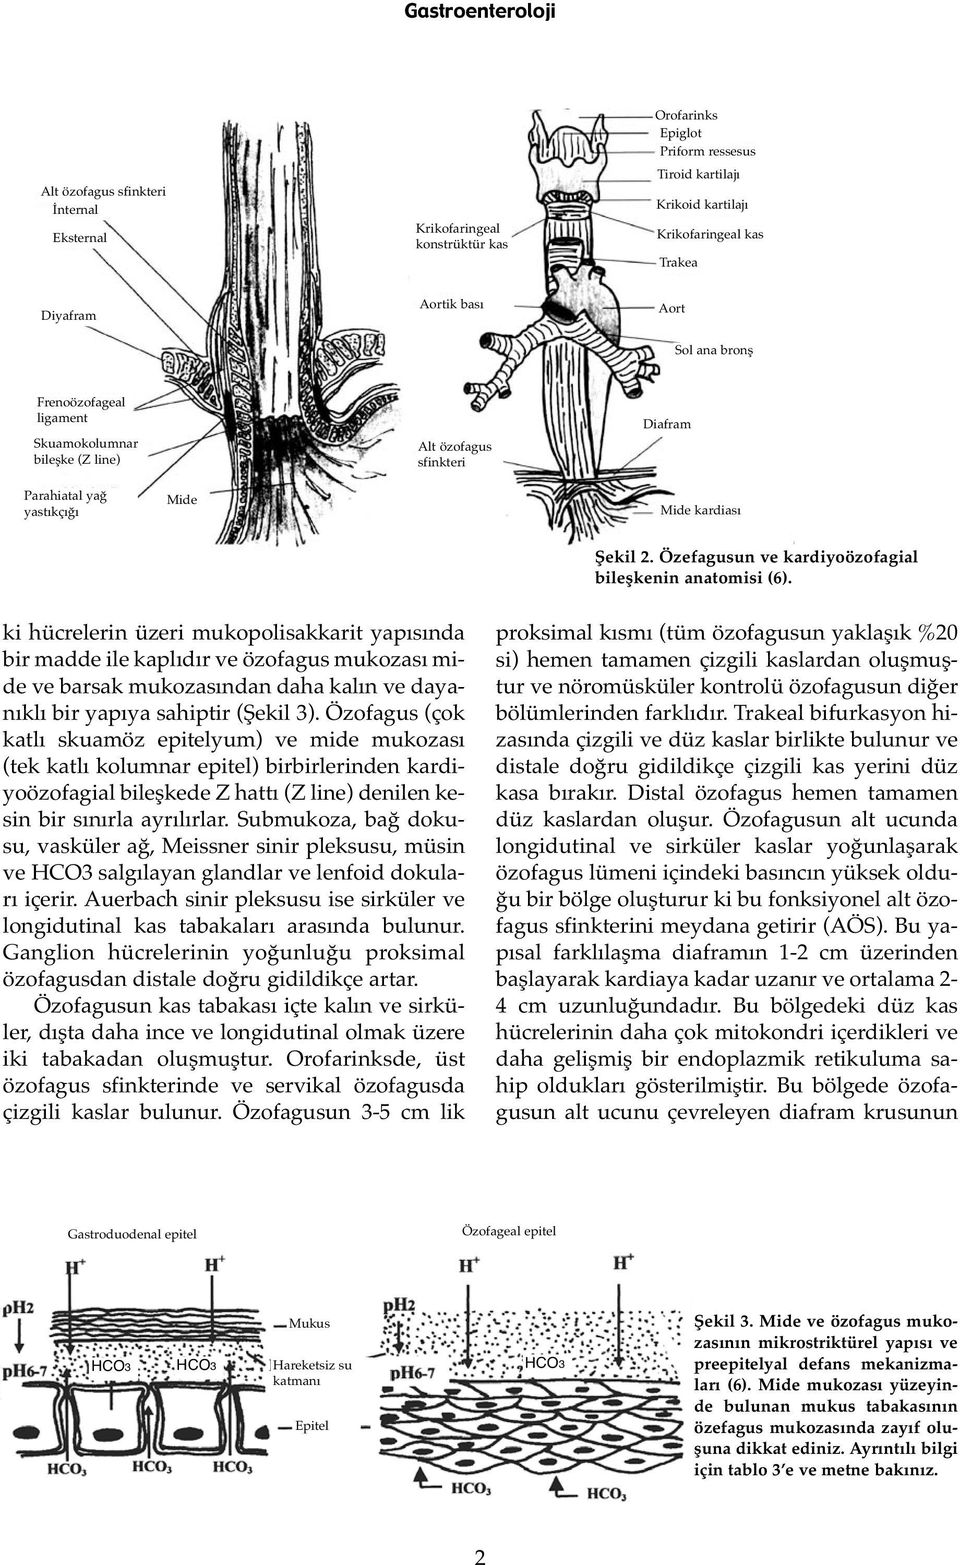 Özefagusun ve kardiyoözofagial bileşkenin anatomisi (6).